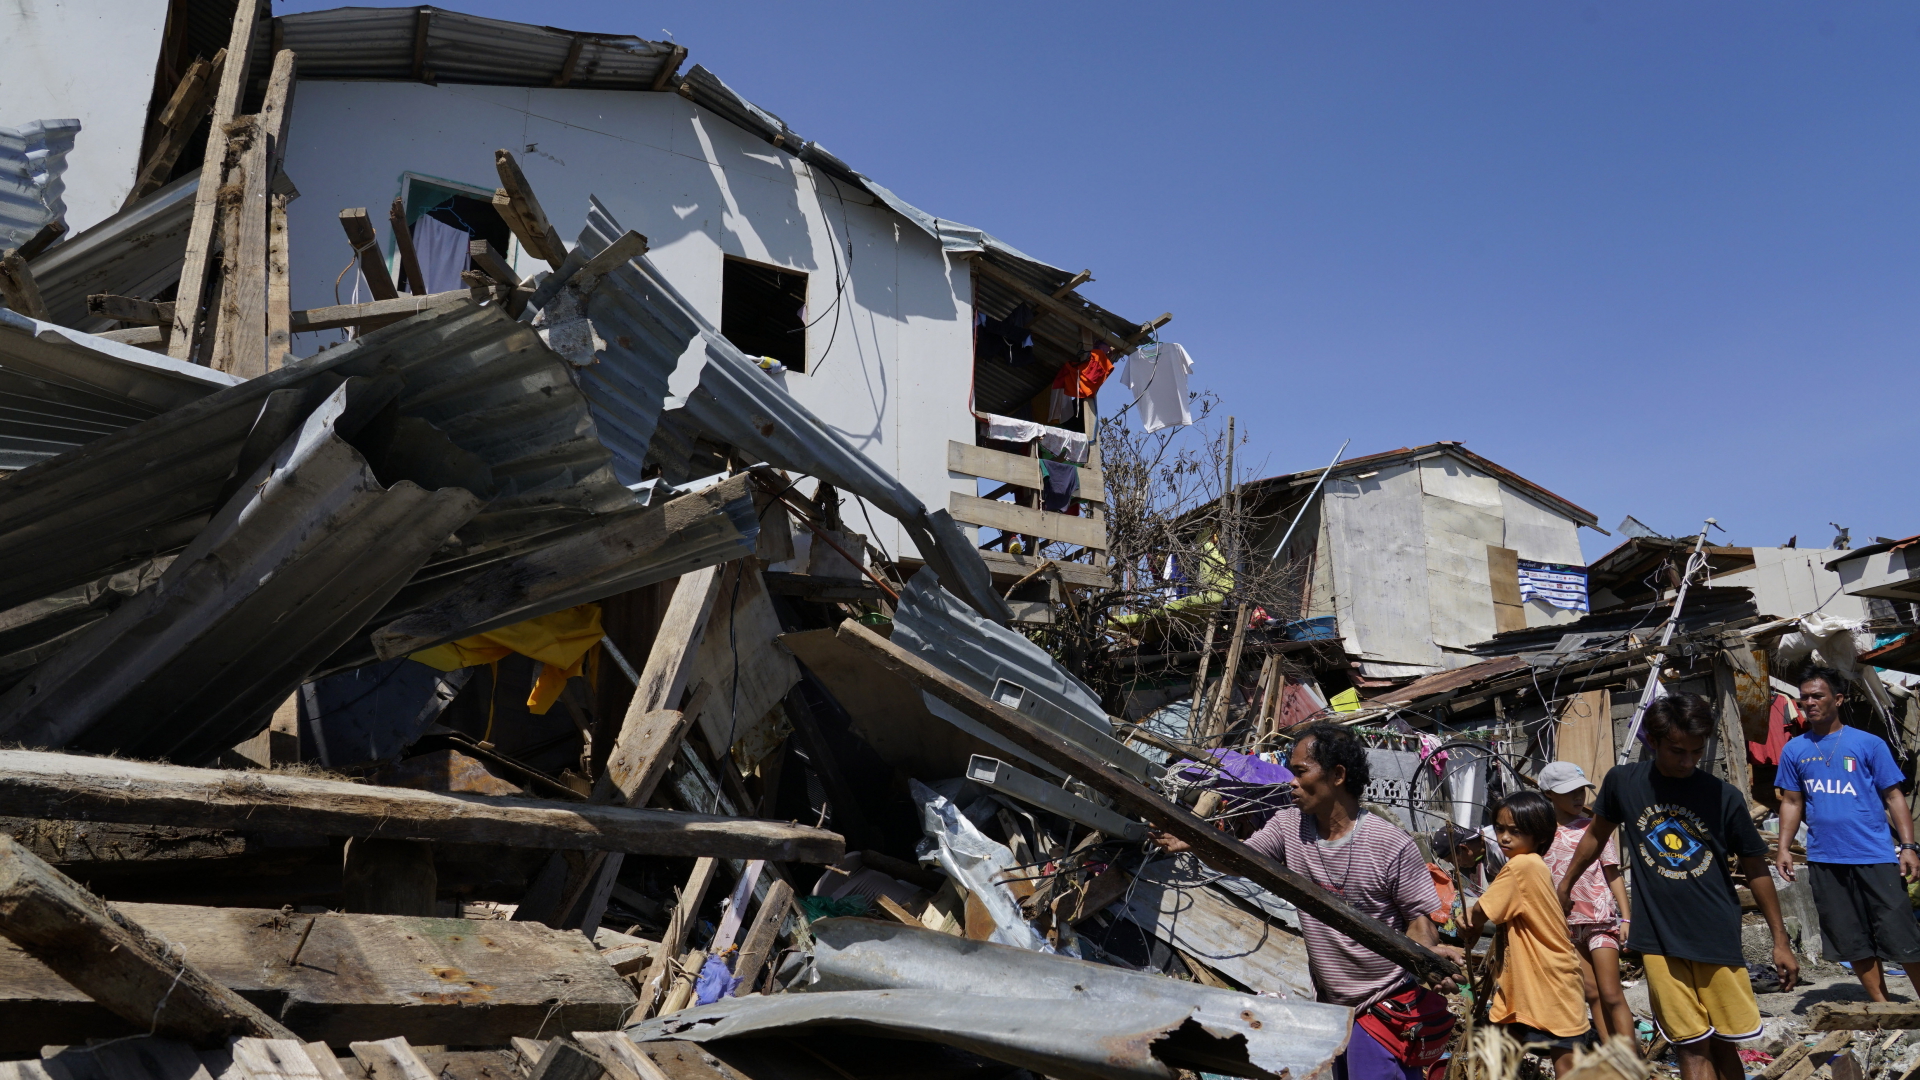 Bewohner suchen nach Habseligkeiten in den Trümmern von zerstörten Häusern. | dpa